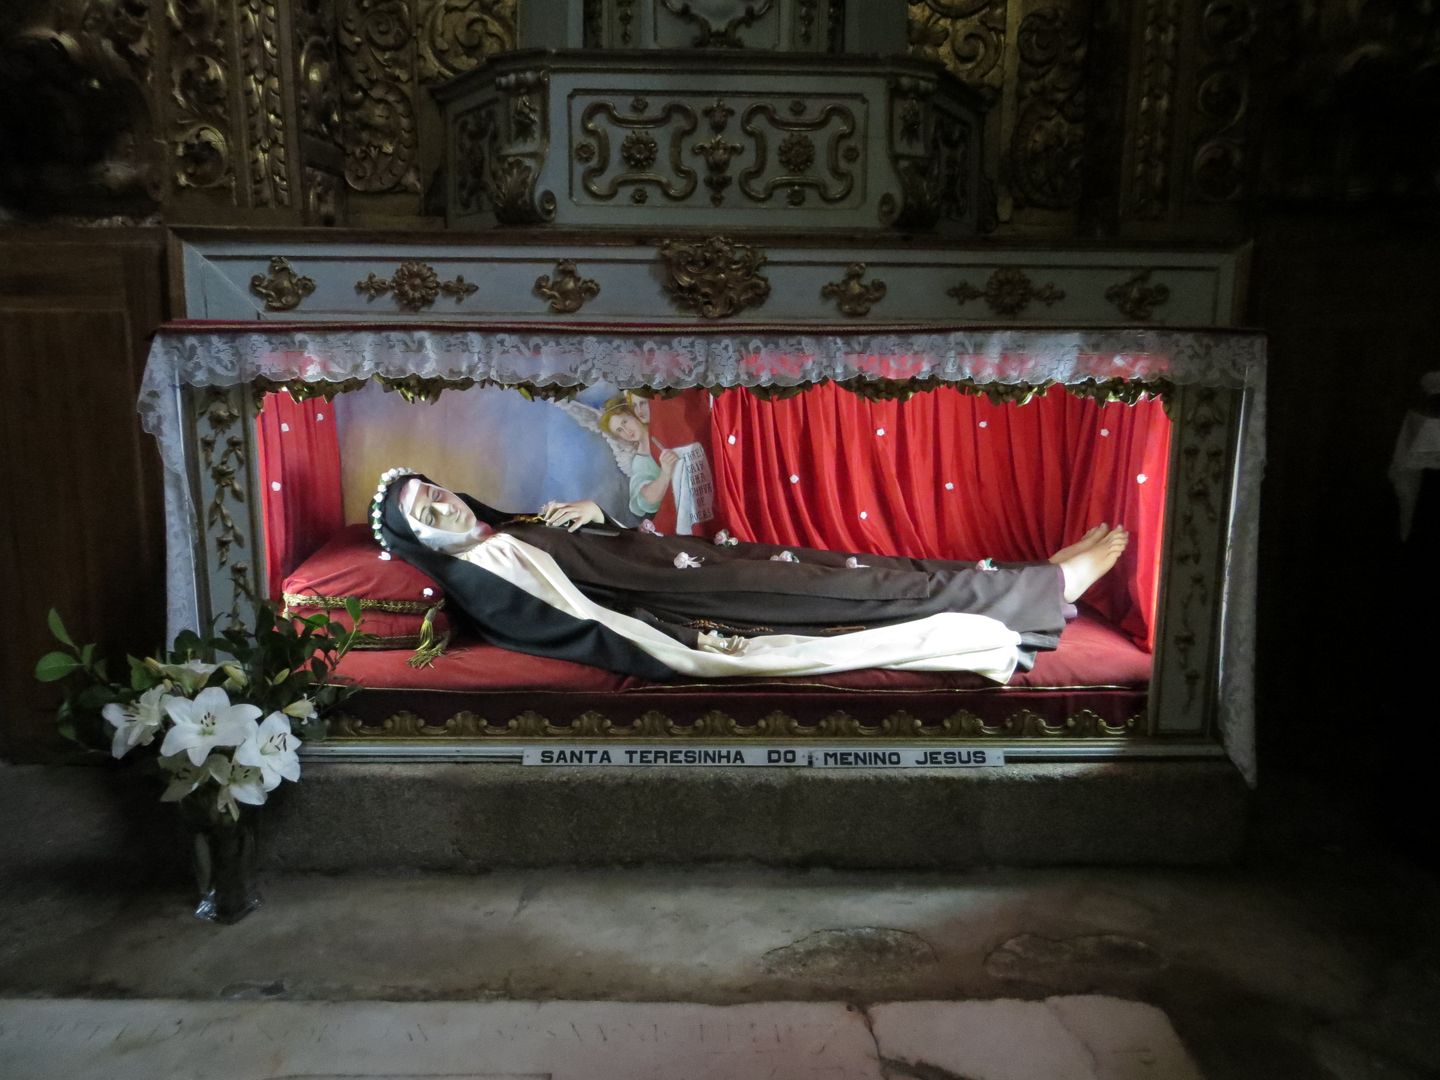 Фотографии Португалии. Эвора - винный дом Fonseca - статуя Христа. Январь 2014